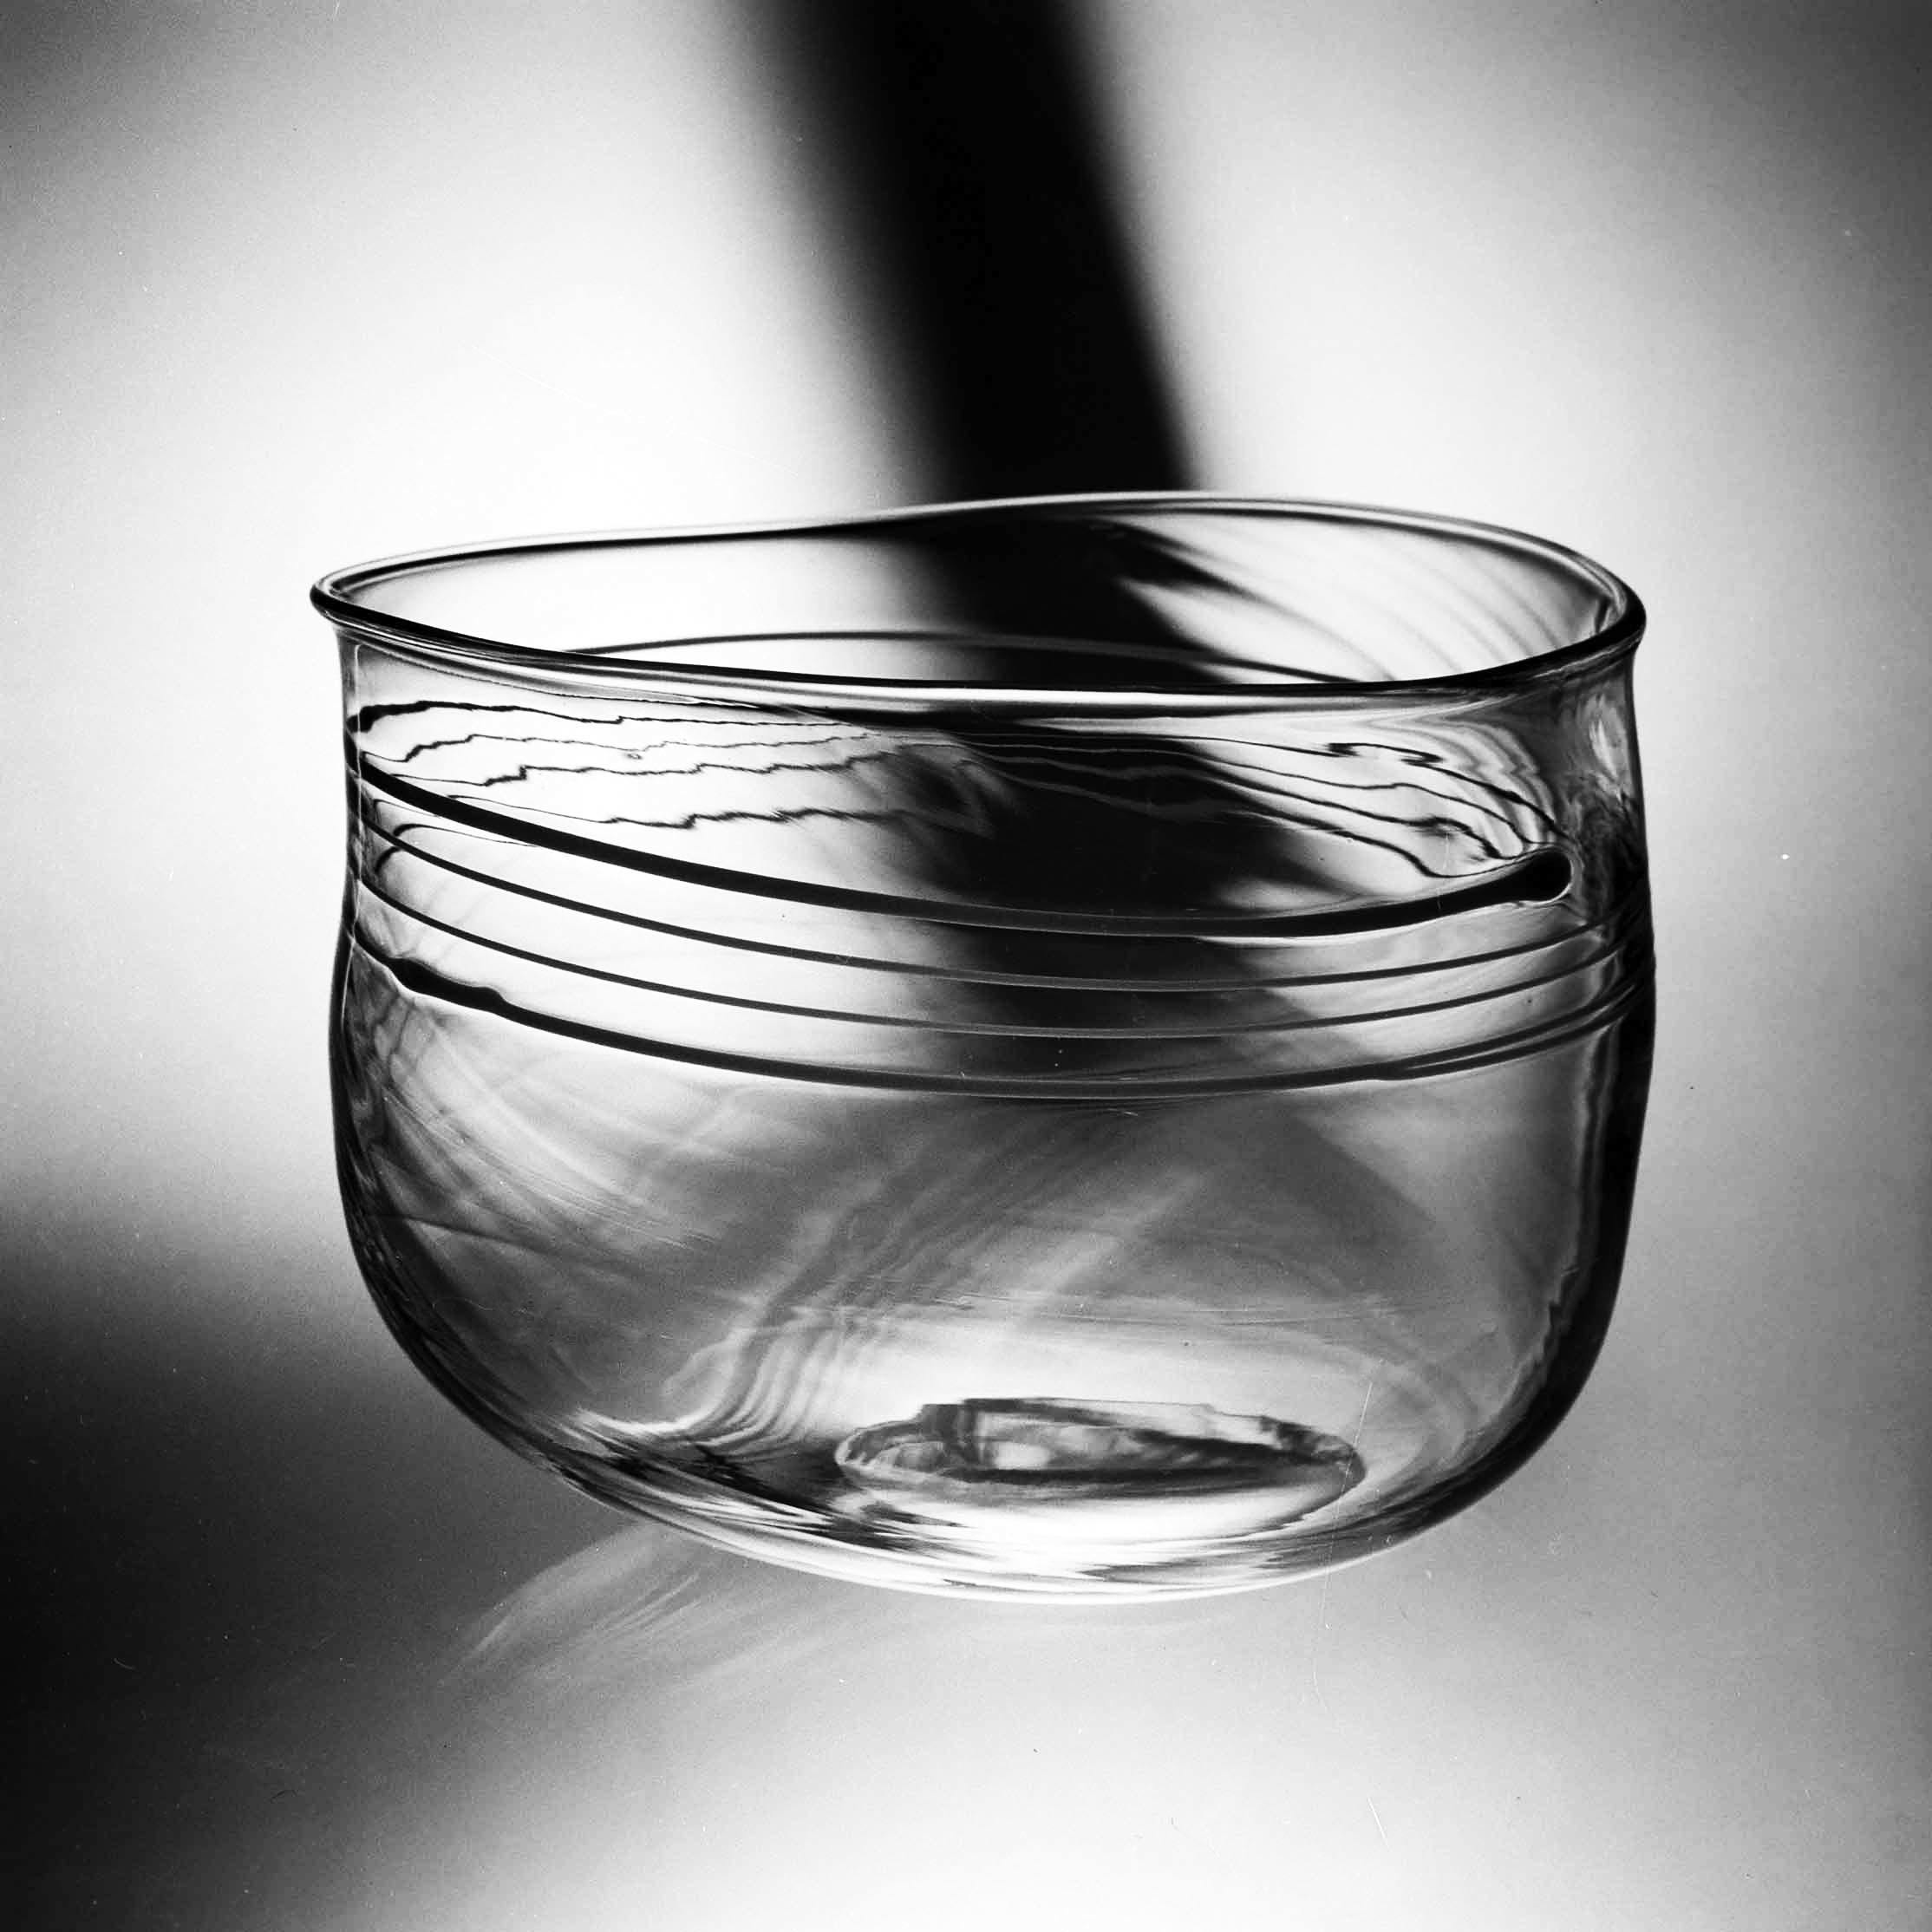 Skål i rampigt glas, Evald Kraft, bitr hyttmästare, foto: John Selbing